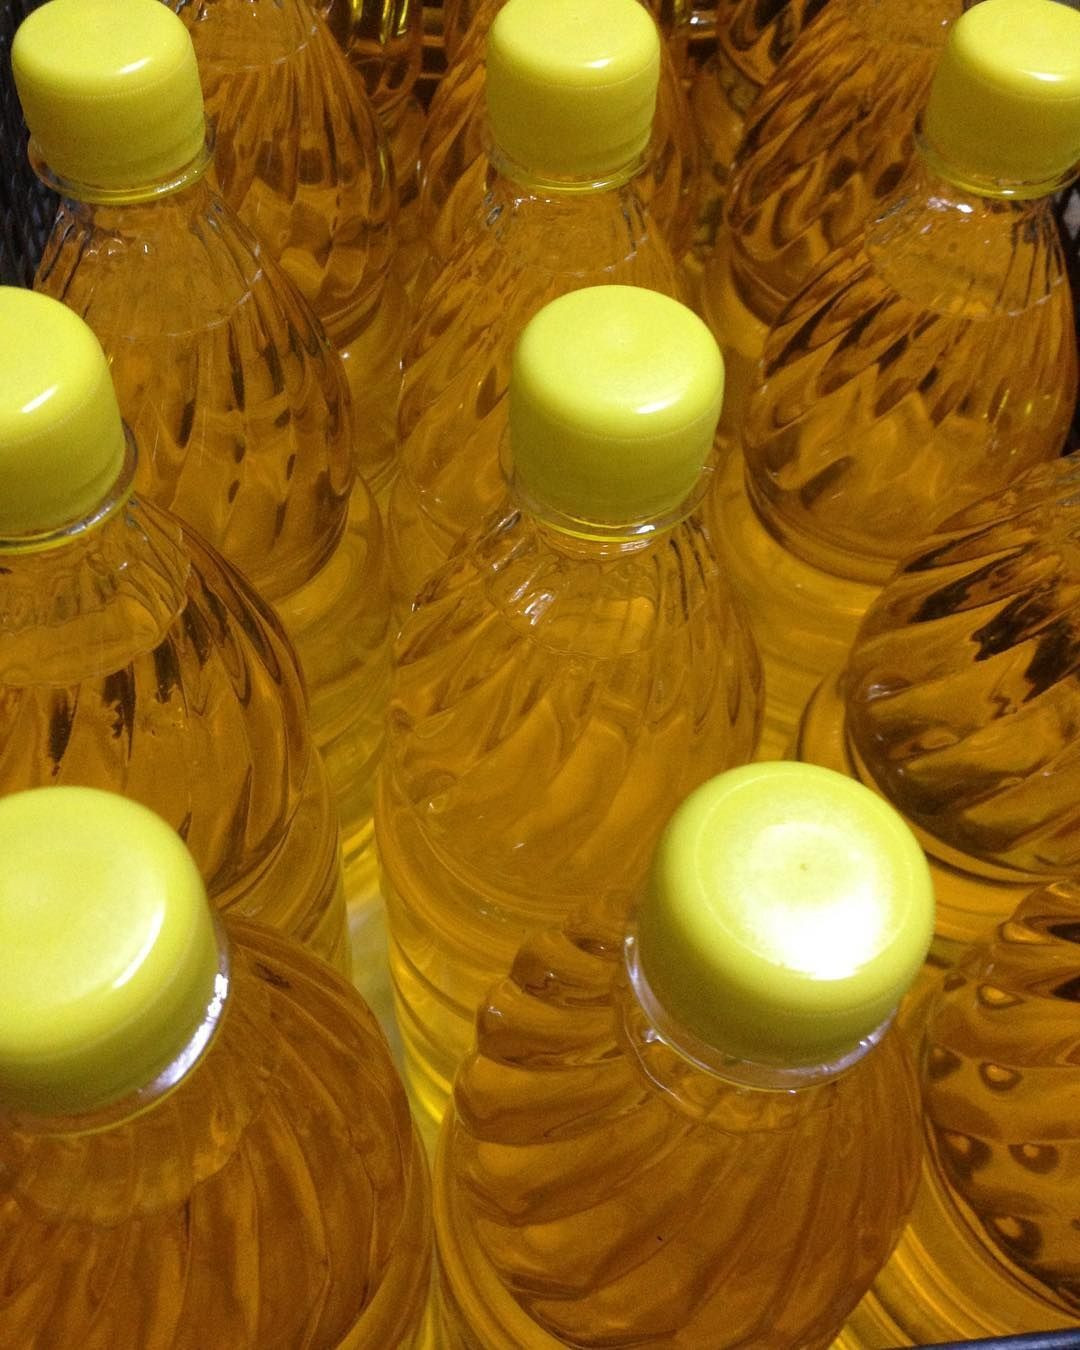 100% Refined Sunflower Edible Oil / Vegetable Oil/Factory Price sunflower oil for sale